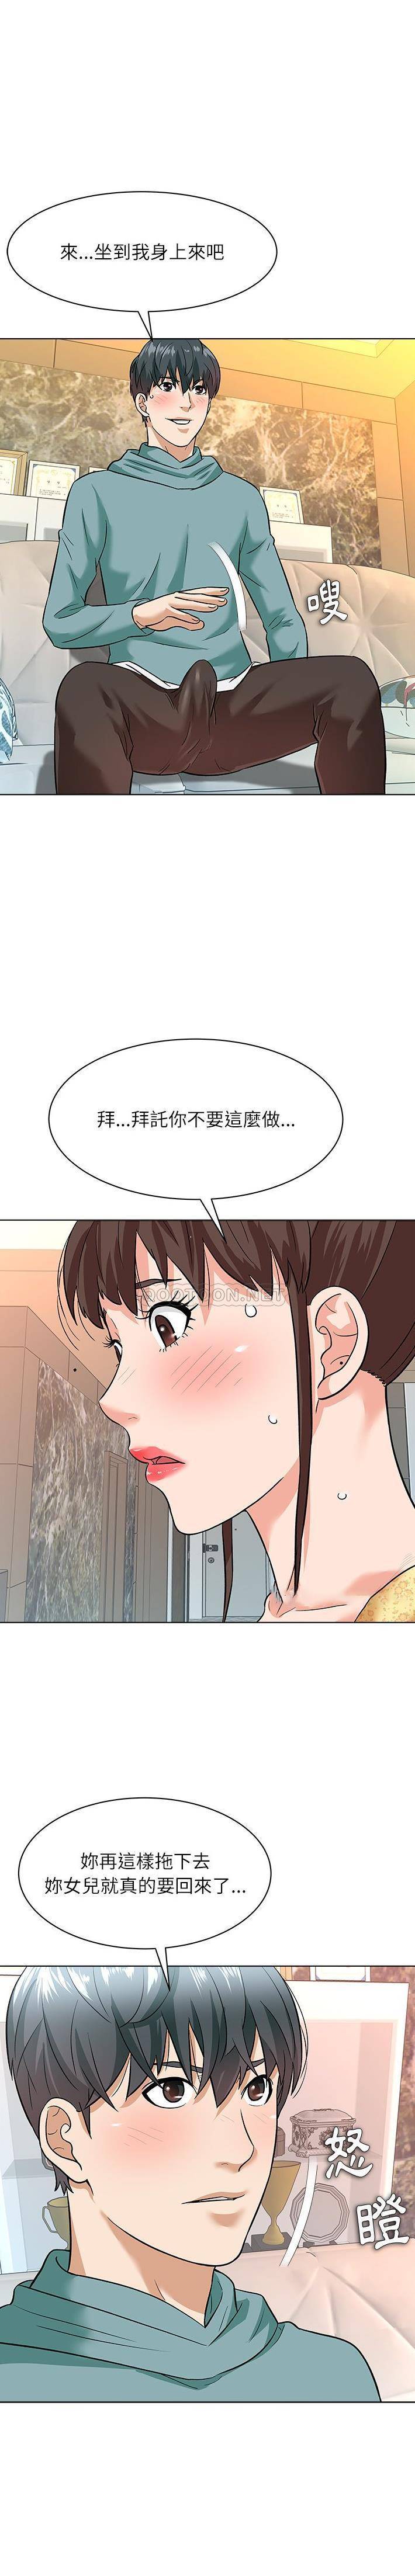 韩国污漫画 豪賭陷阱 第8话 14